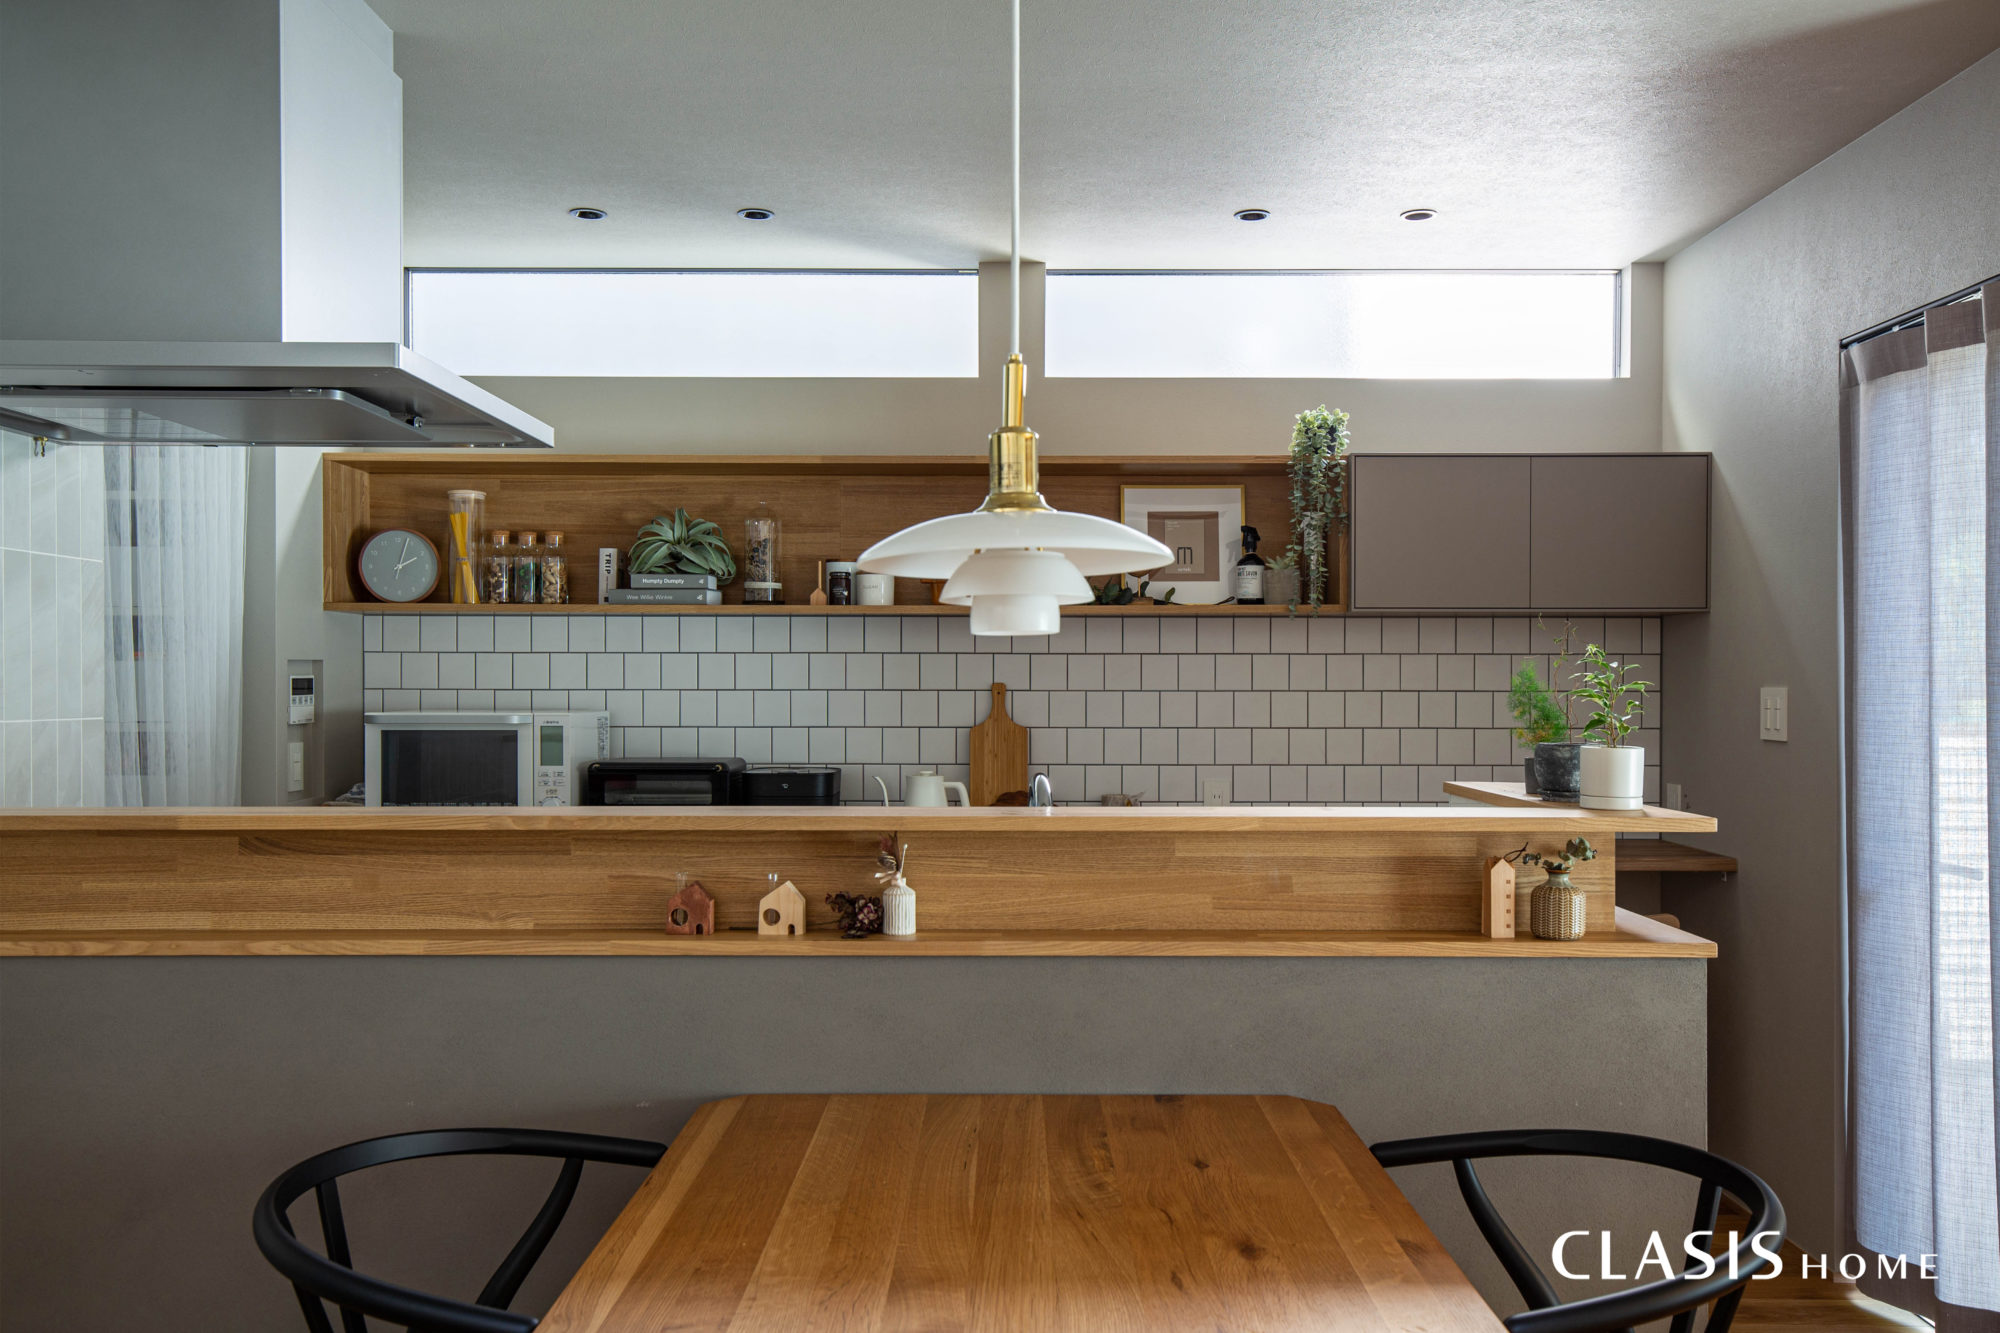 北欧雑貨・家具が似合うグレーとホワイトを基調にしたキッチン。